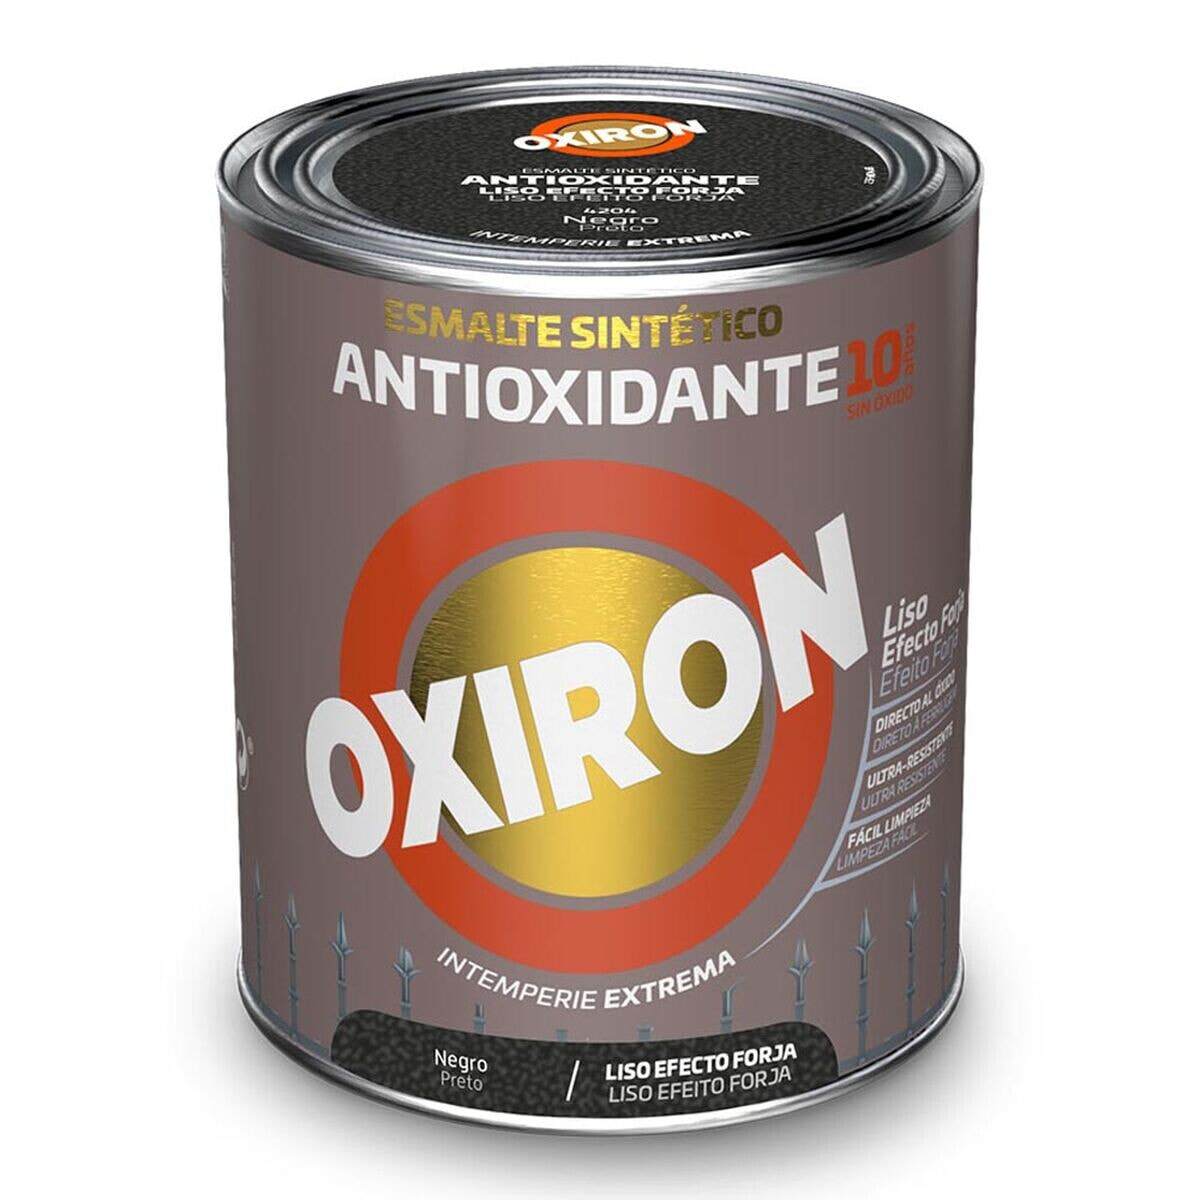 Синтетическая эмаль Oxiron Titan 5809097 Чёрный 750 ml антиоксидантами